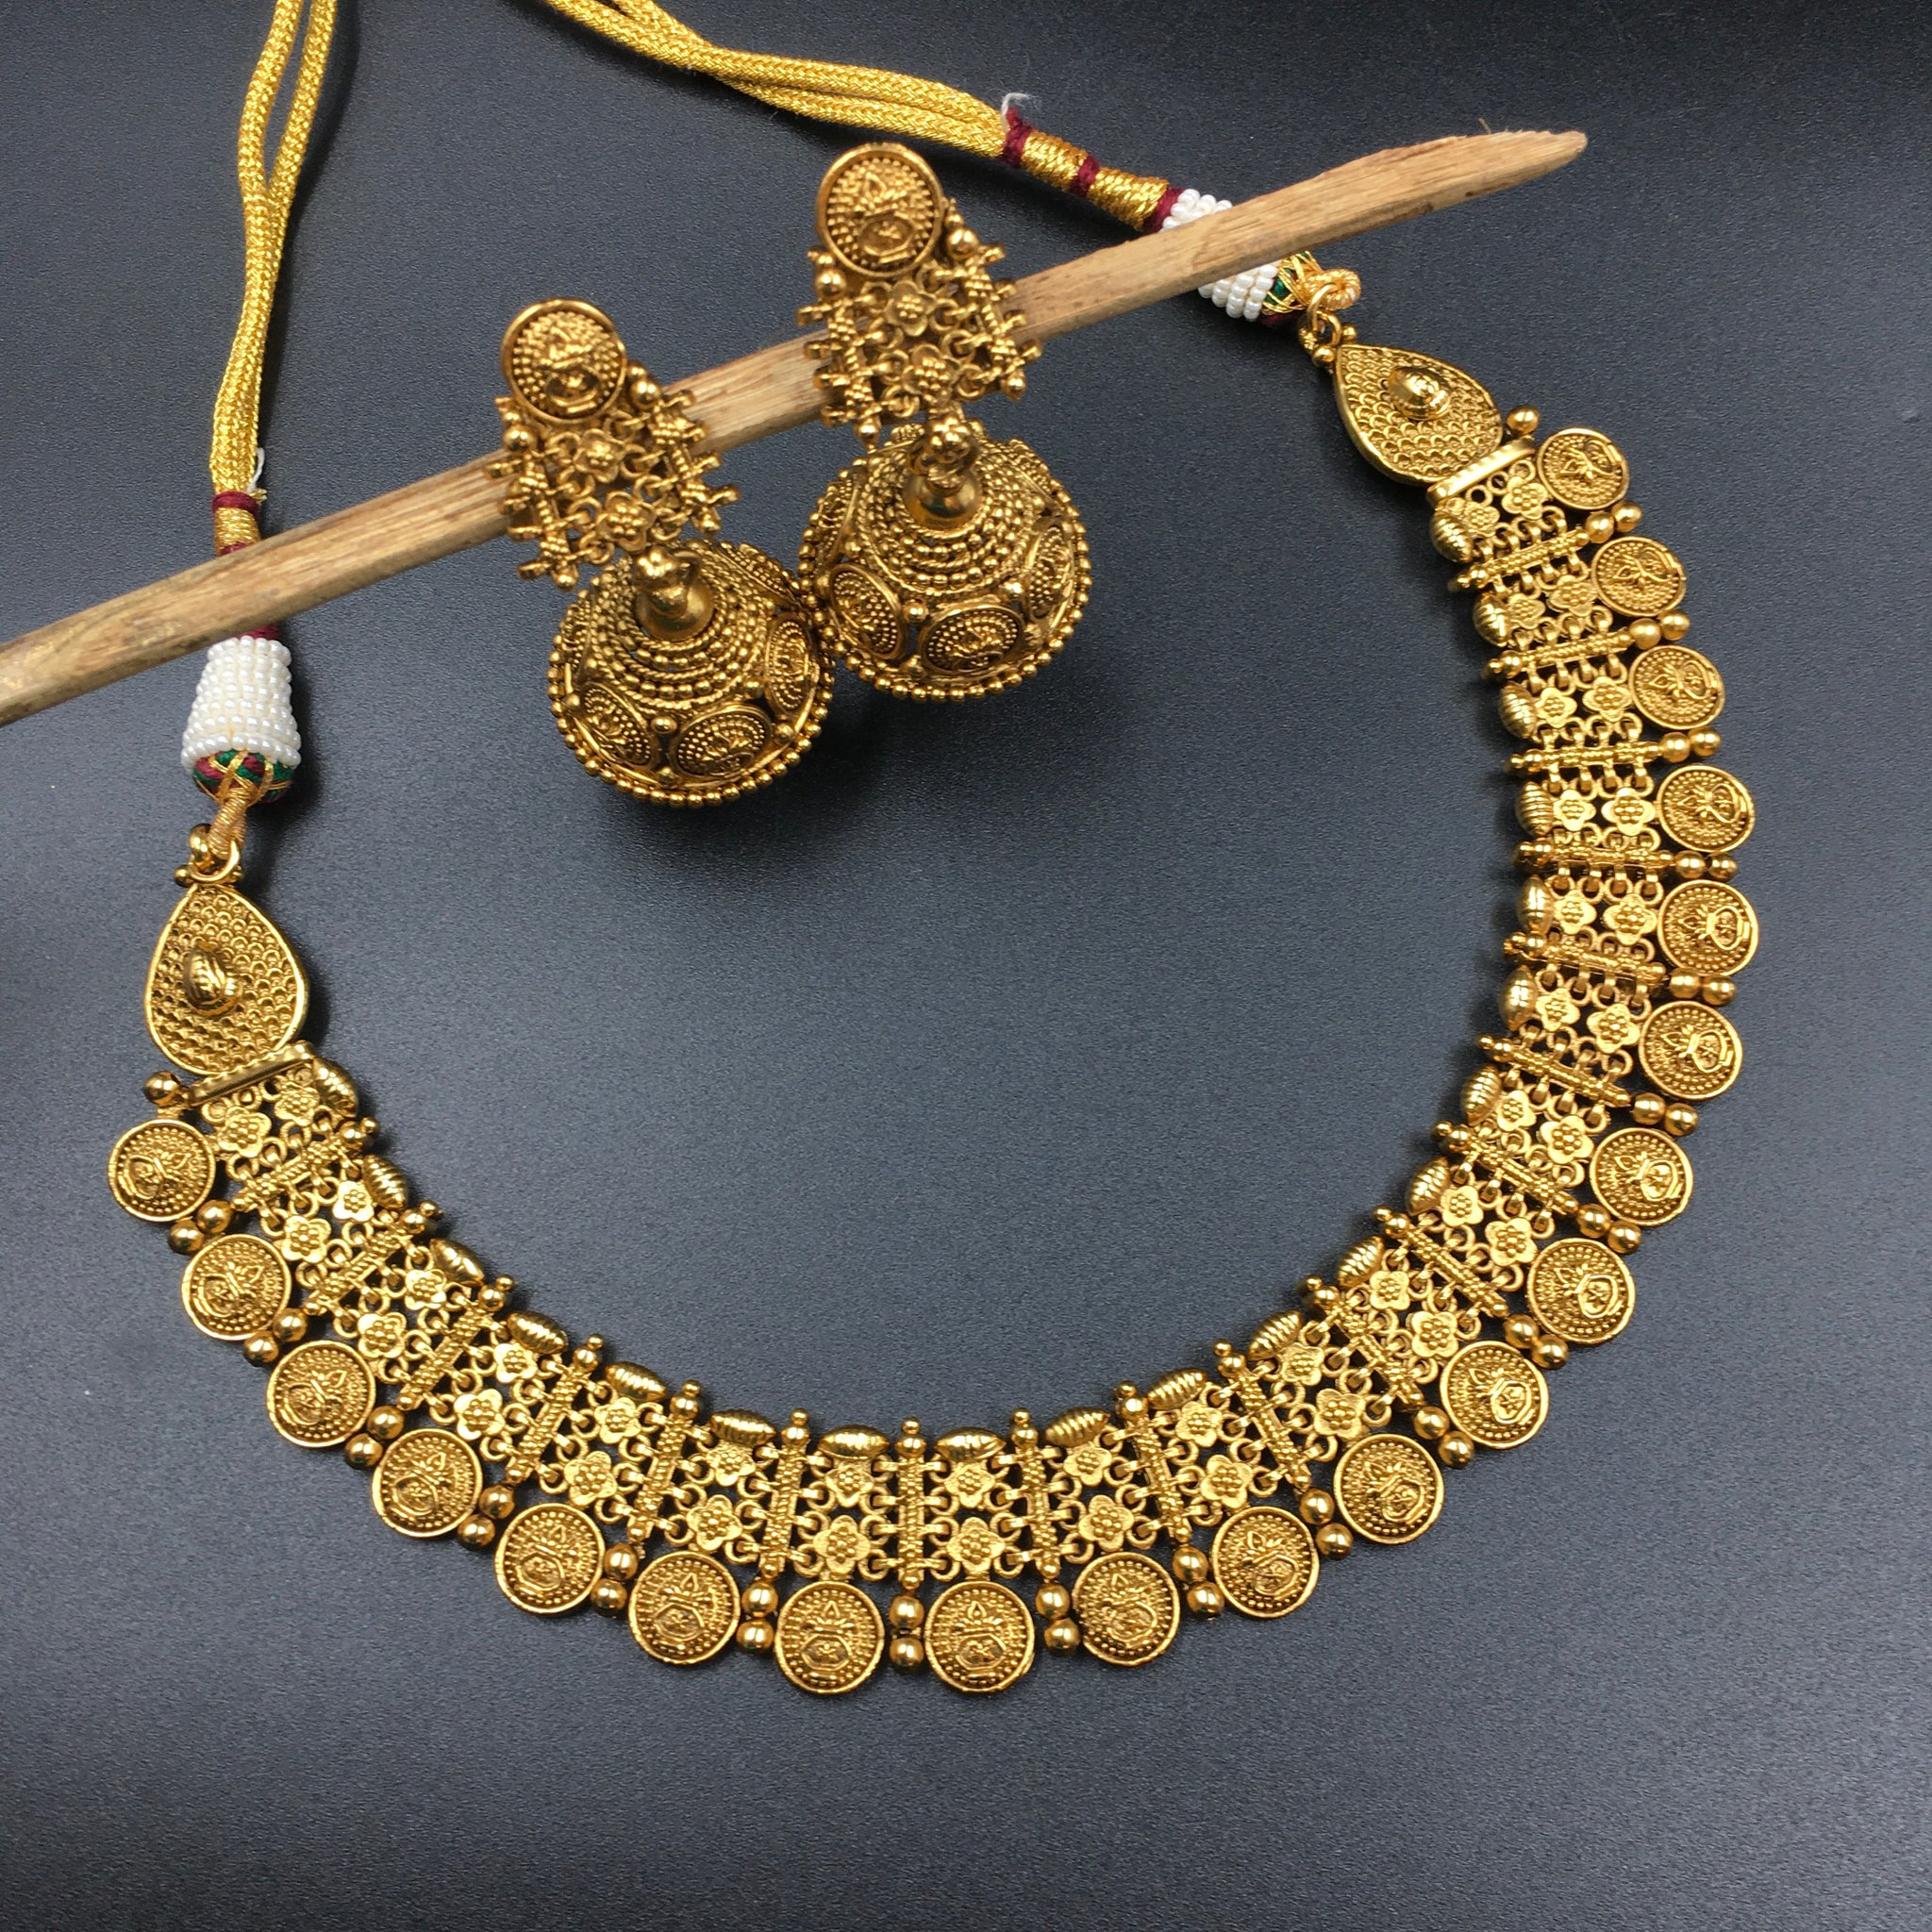 Round Neck Antique Necklace Set 3578-28 - Dazzles Jewellery